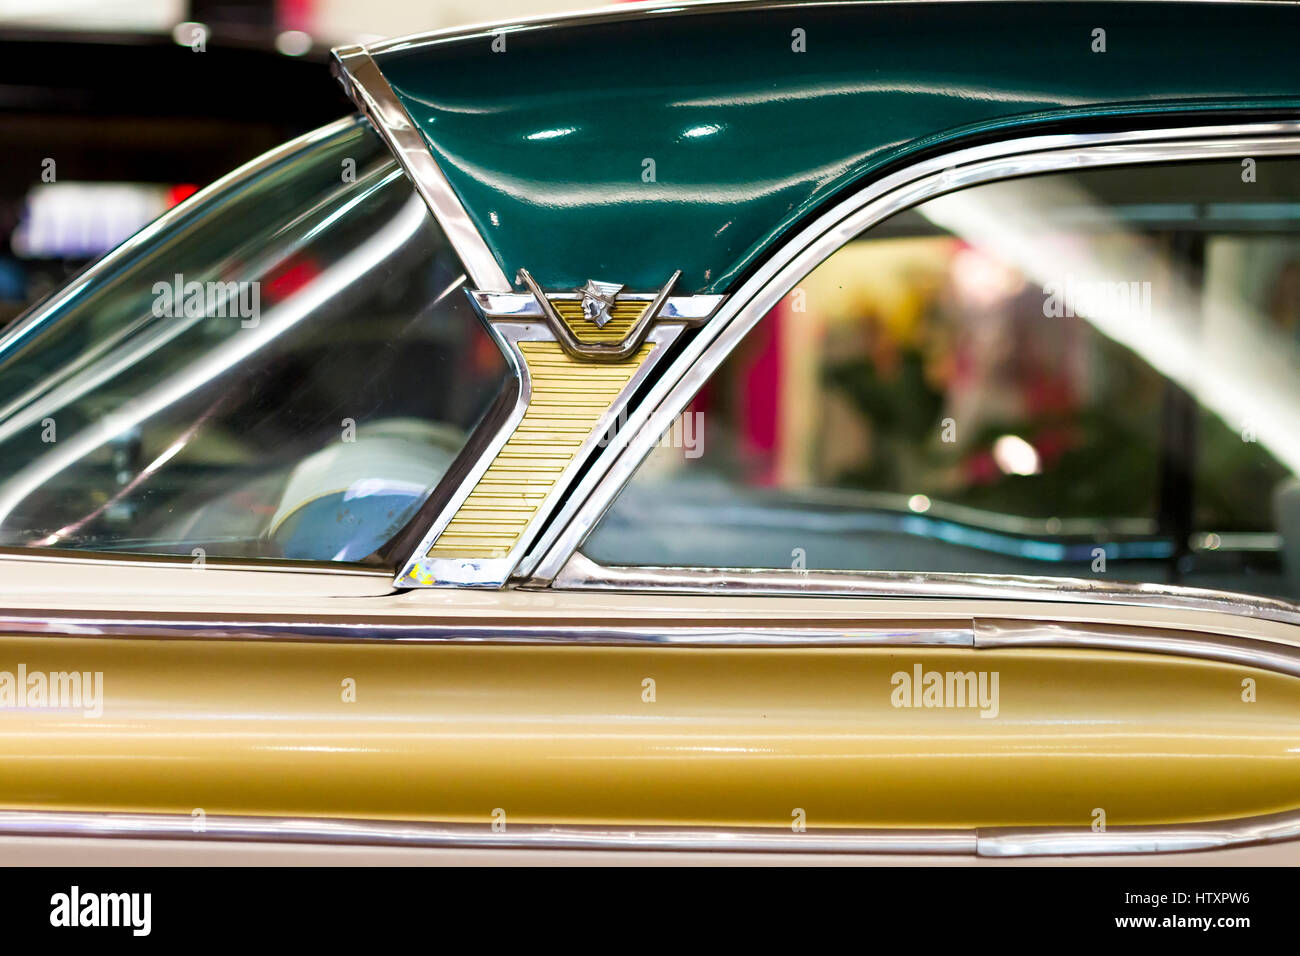 1957 Mercury Turnpike Cruiser. Vue latérale, détail de l'arrière du véhicule. Exposition de voitures anciennes et classiques. Banque D'Images